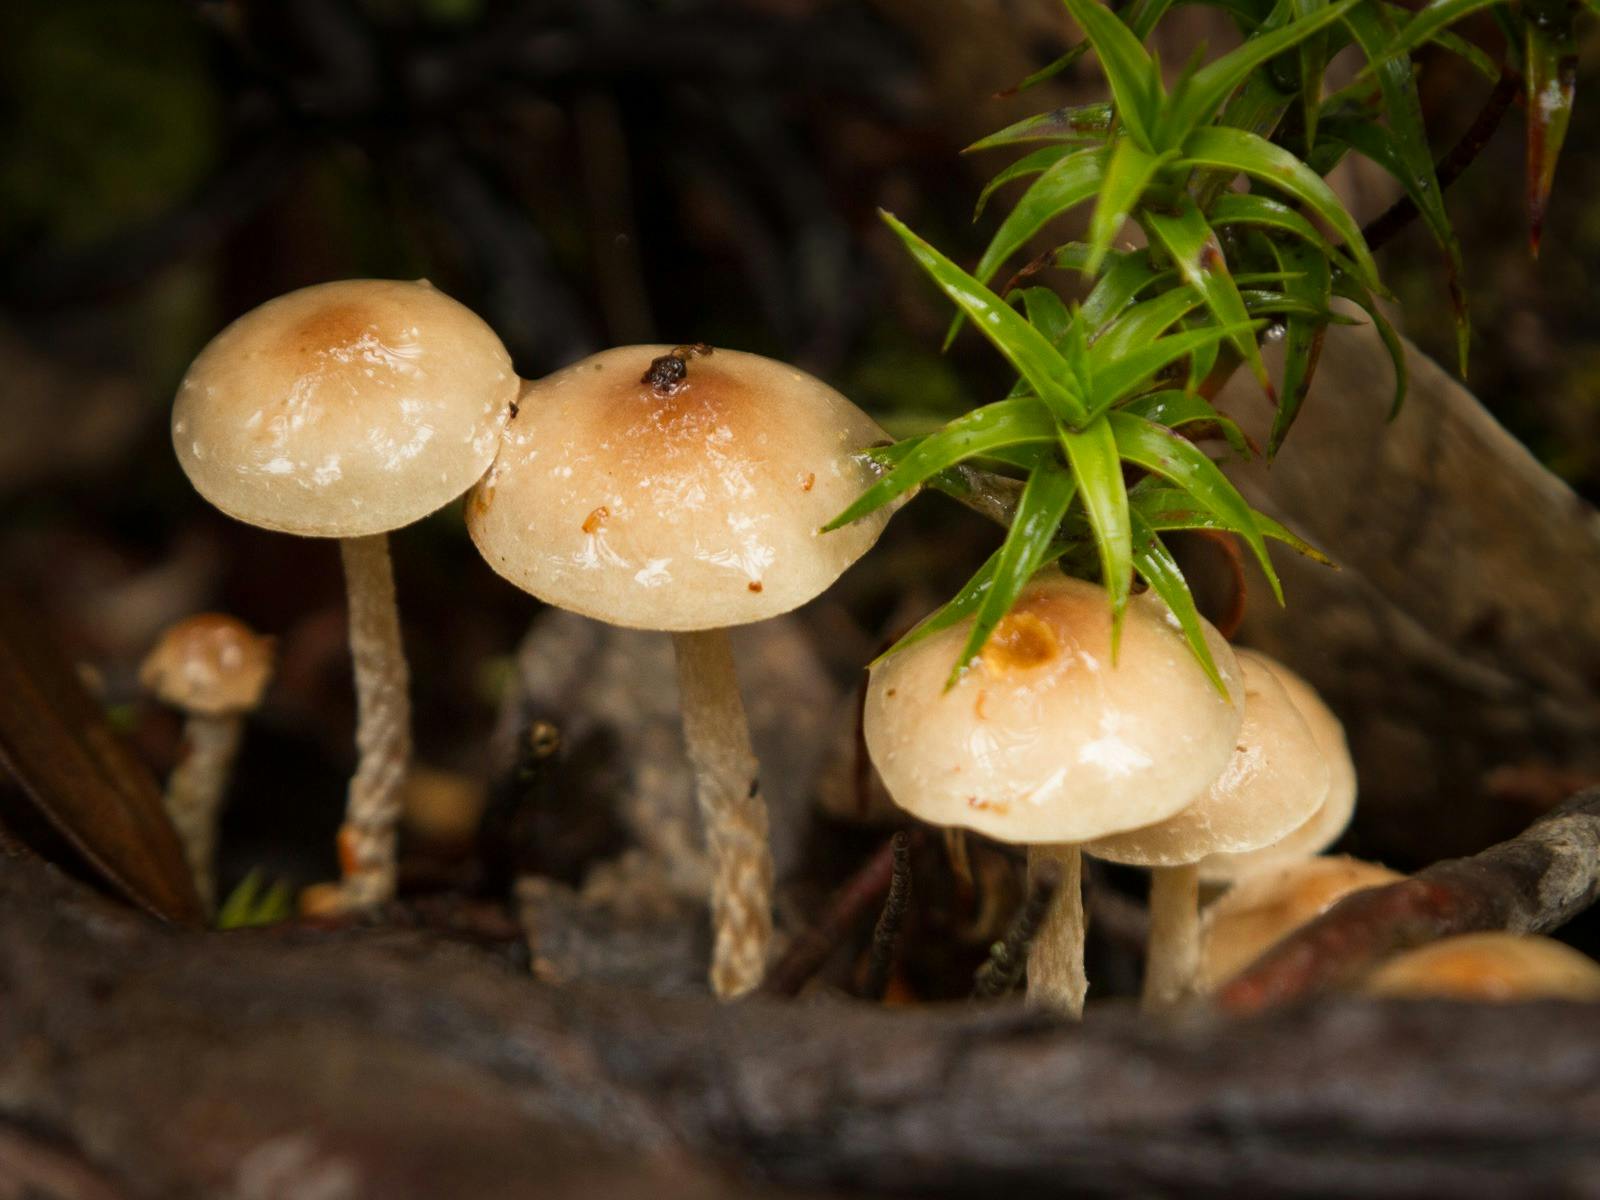 Autumn Fungi